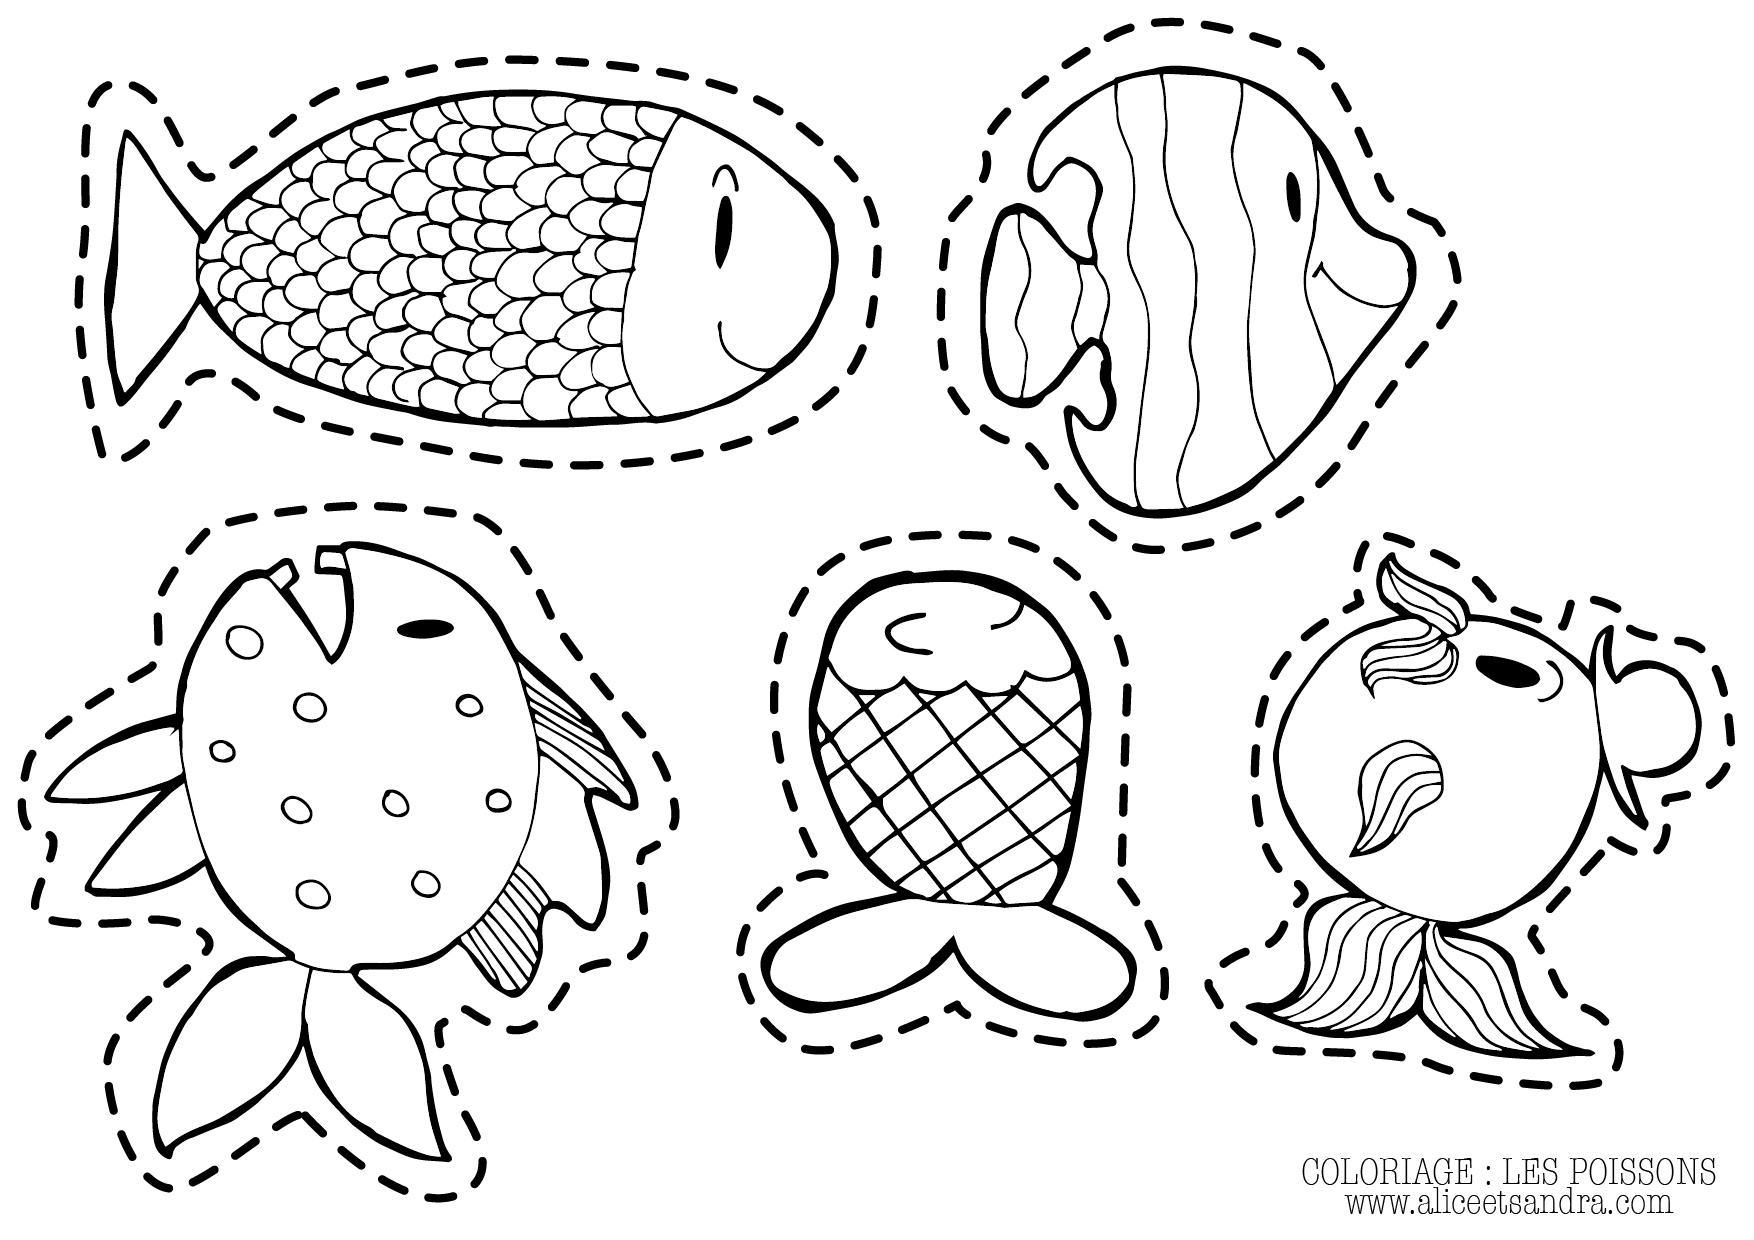 coloriage poisson d avril gratuit imprimer coloriage poisson d avril gratuit imprimer poisson d avril